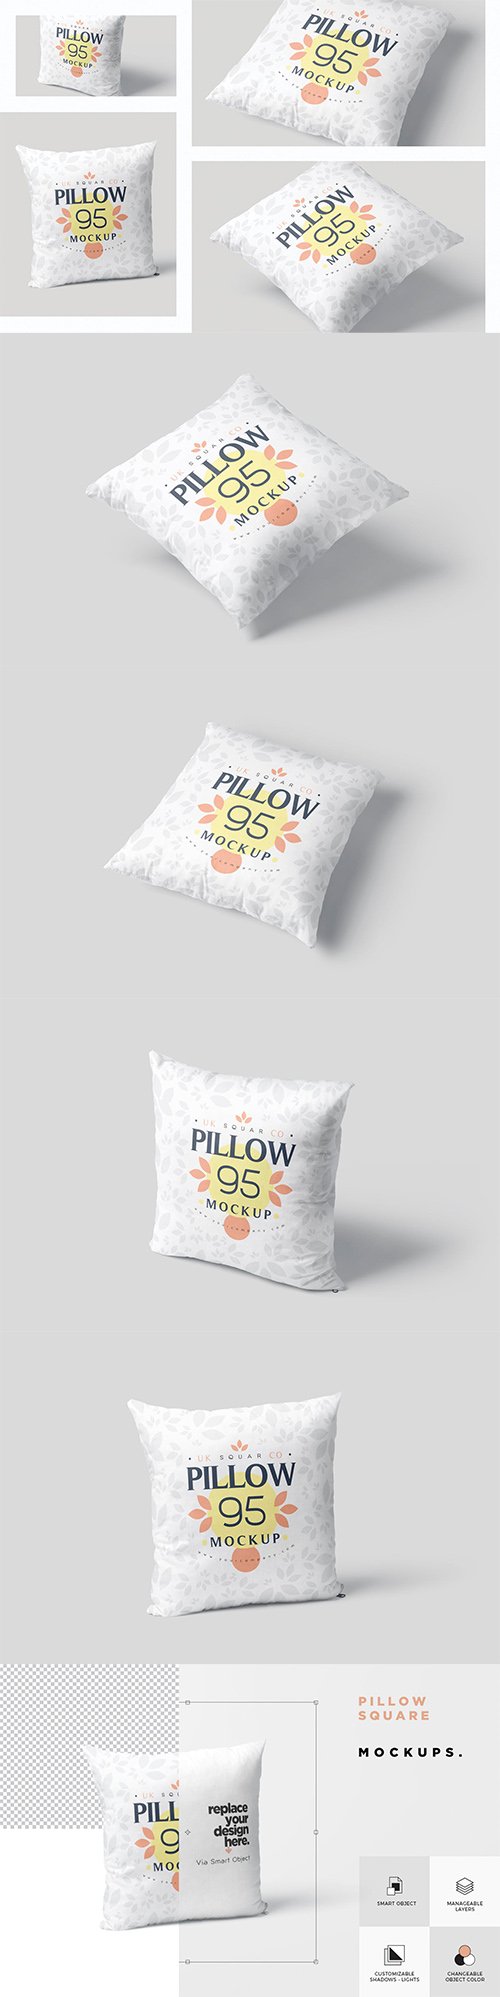 Pillow Mockup Set - Square PSD